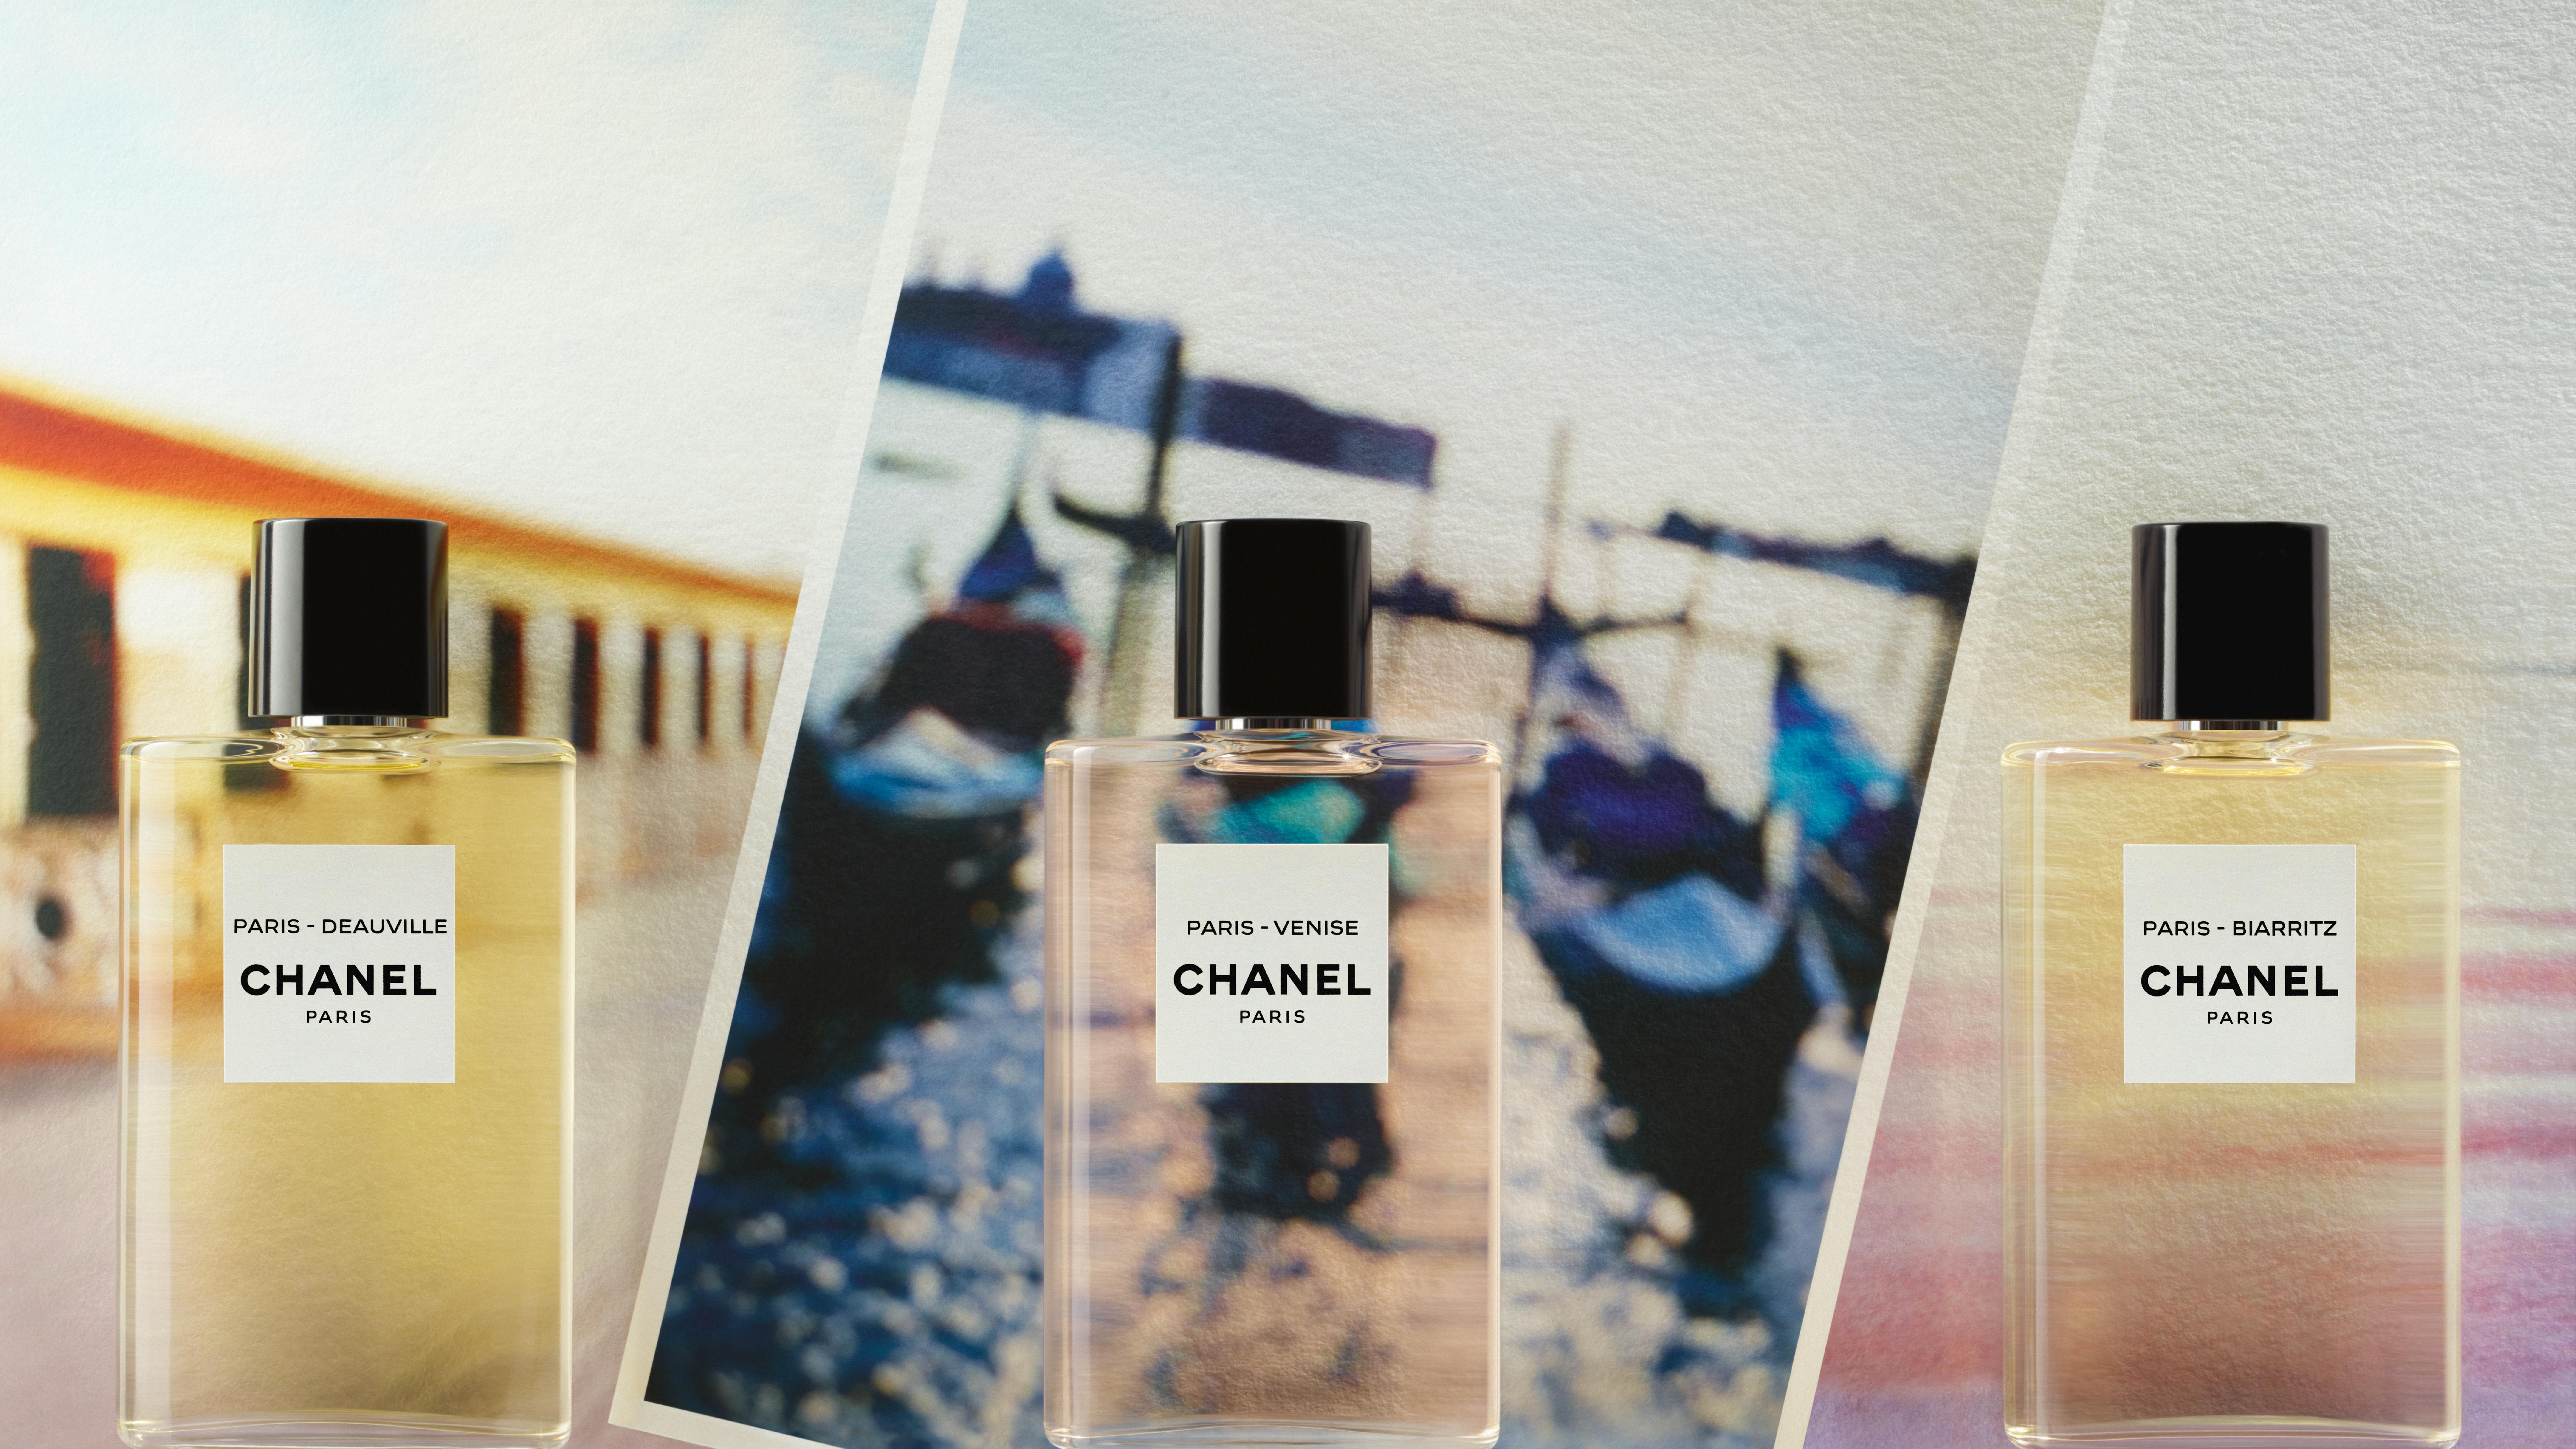 LES EAUX DE CHANEL: A faraway summer escape with Chanel's latest scent